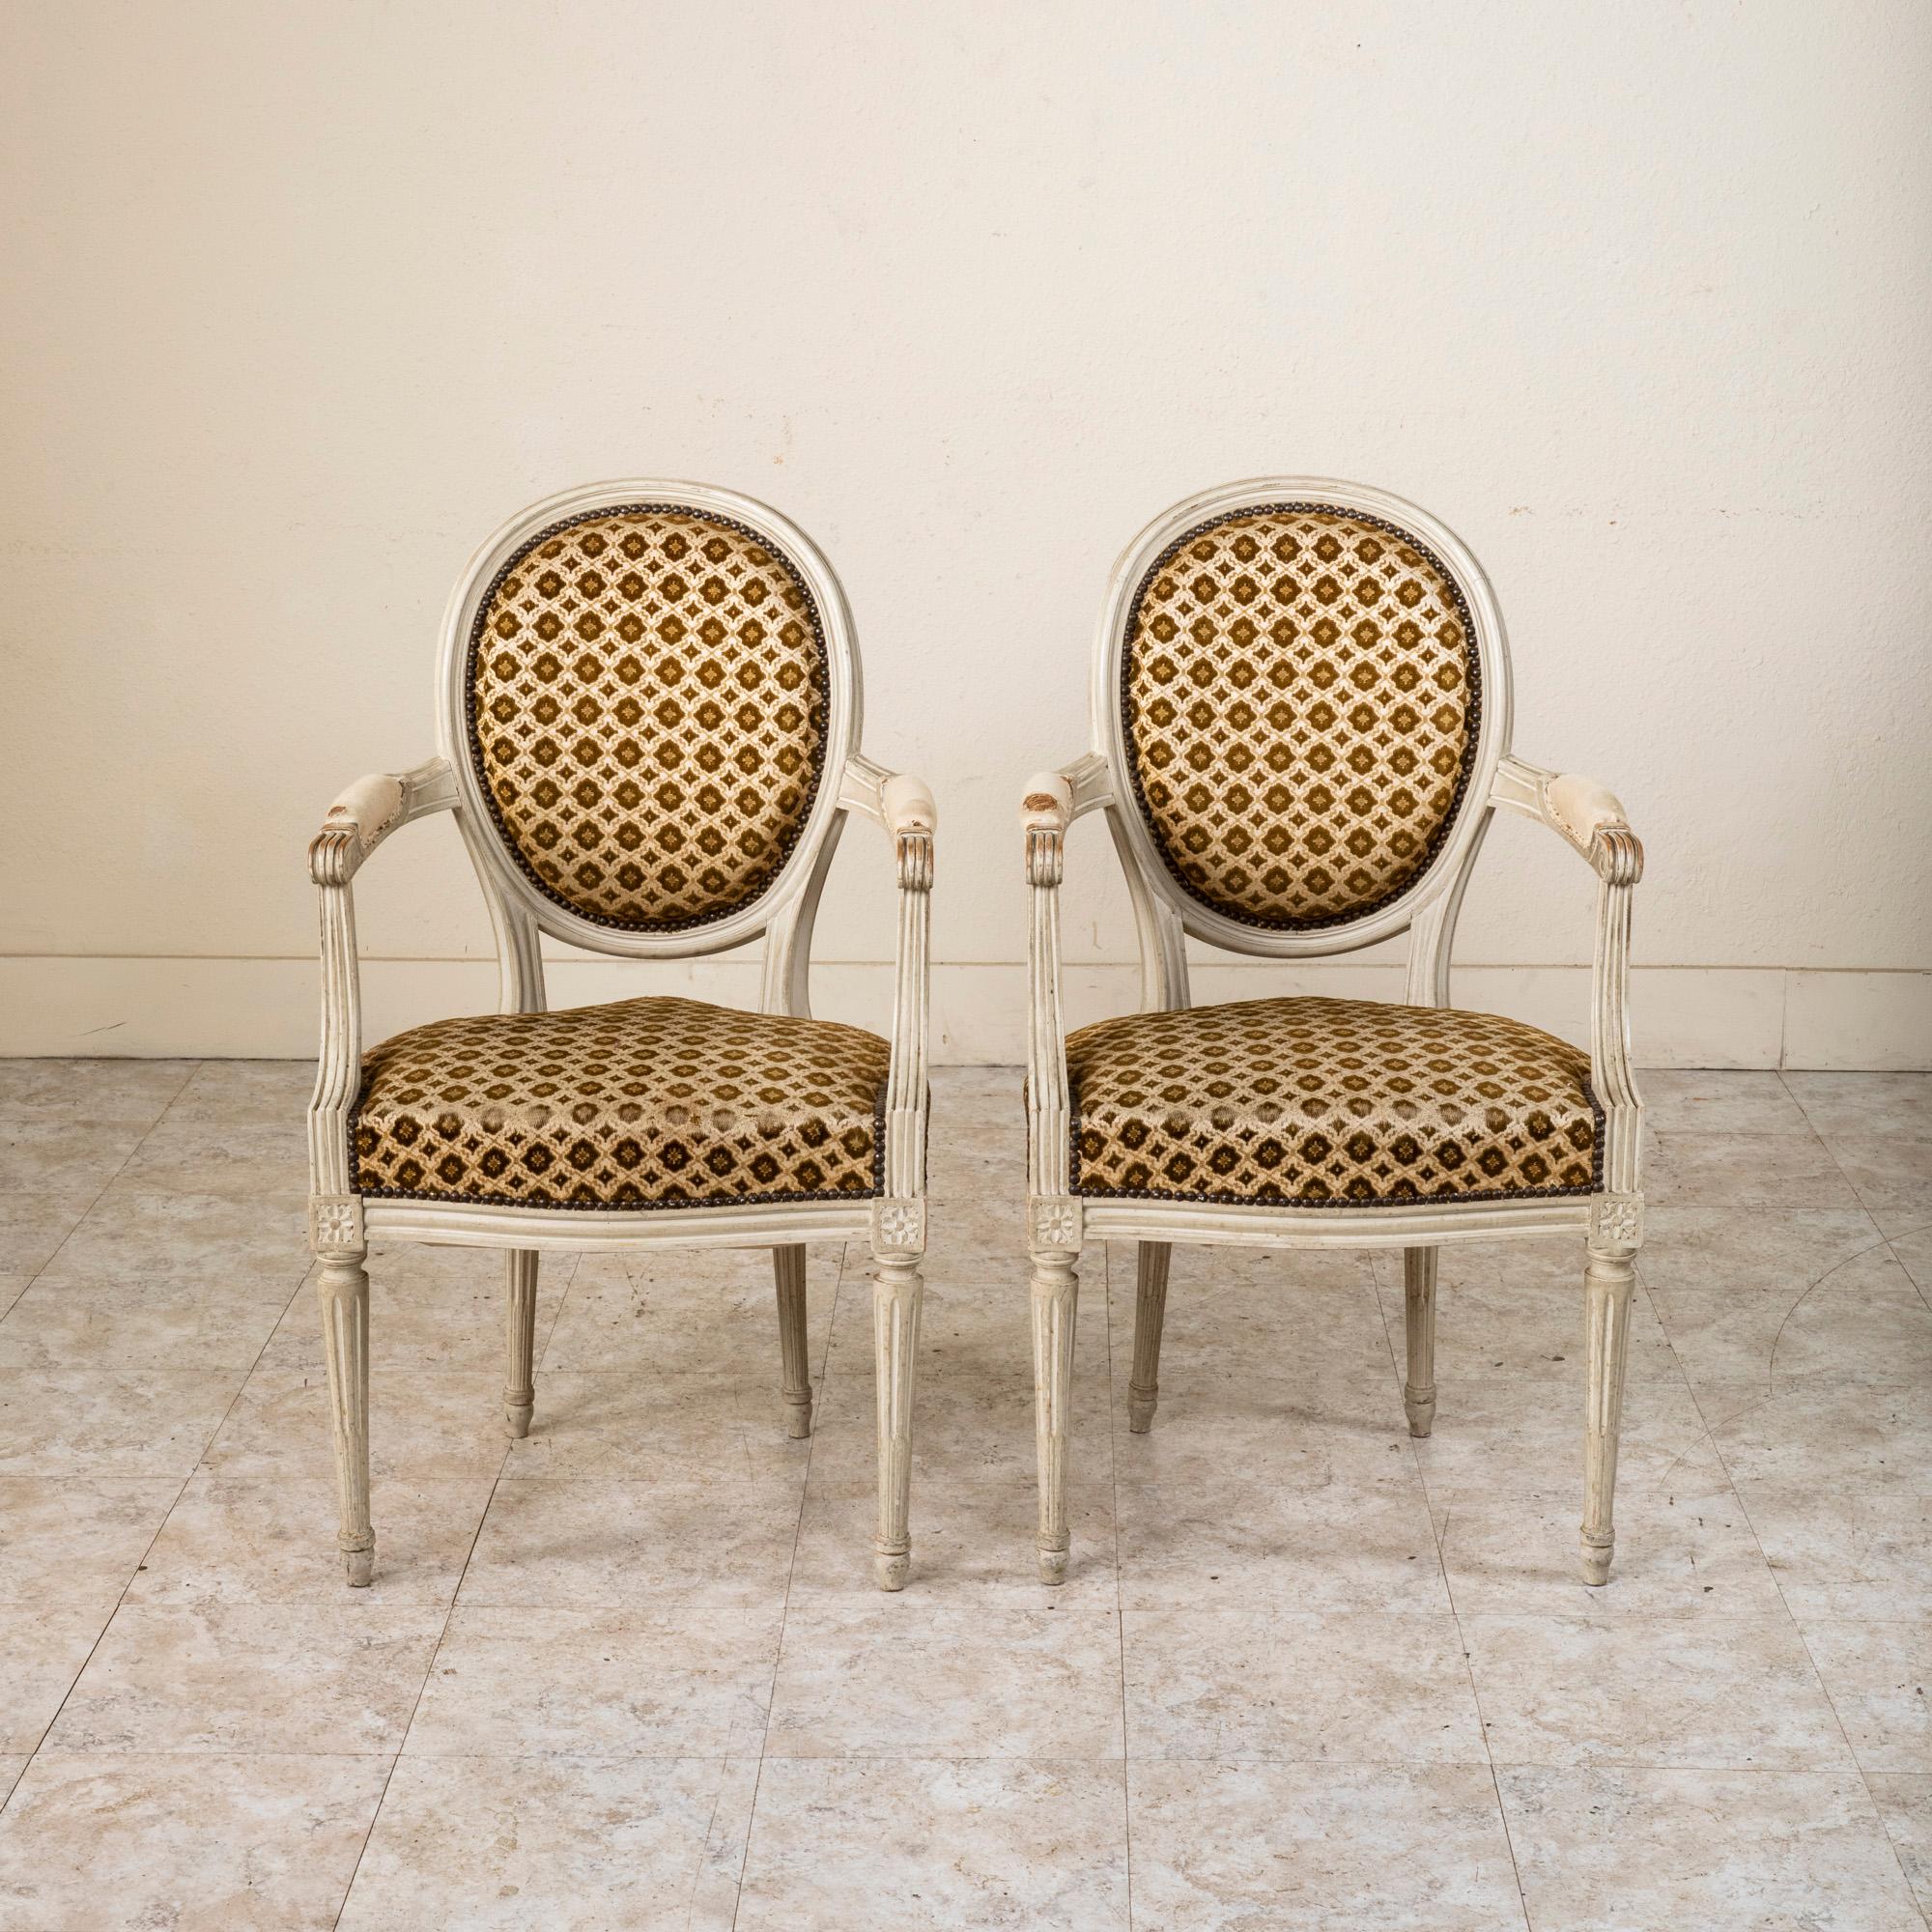 Dieses Paar Cabrio-Sessel im Louis-XVI-Stil wurde in der Normandie in Frankreich gefunden und weist die ursprüngliche patinierte Oberfläche auf. Dieses klassische Paar zeichnet sich durch medaillonierte Rückenlehnen, geriffelte Armlehnen mit